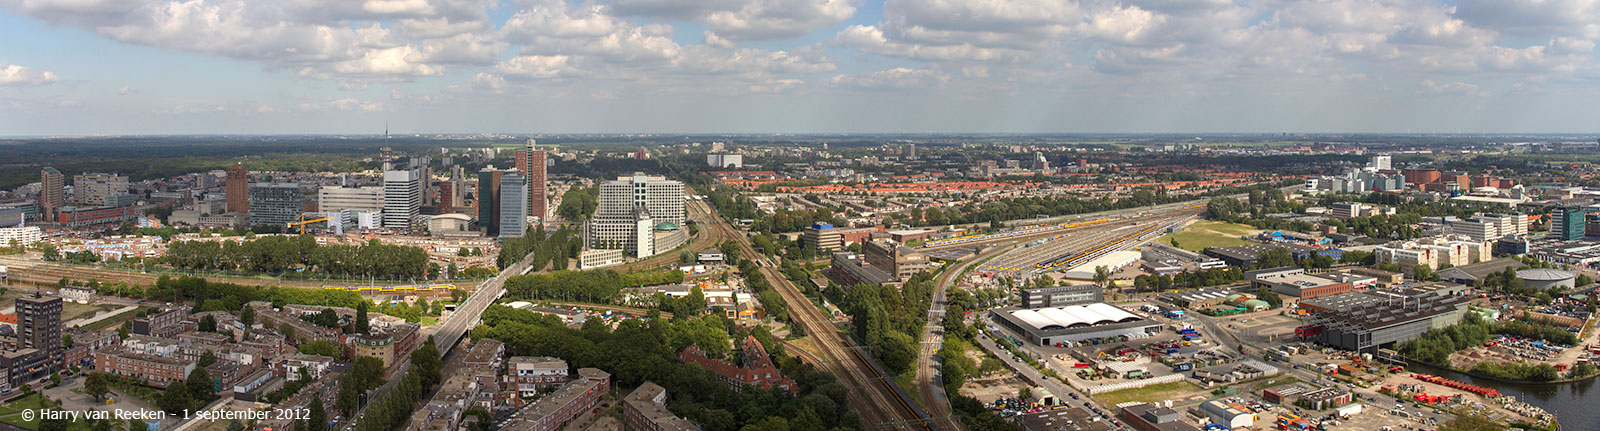 panorama-Beatrixkwartier-Binckhorst-1